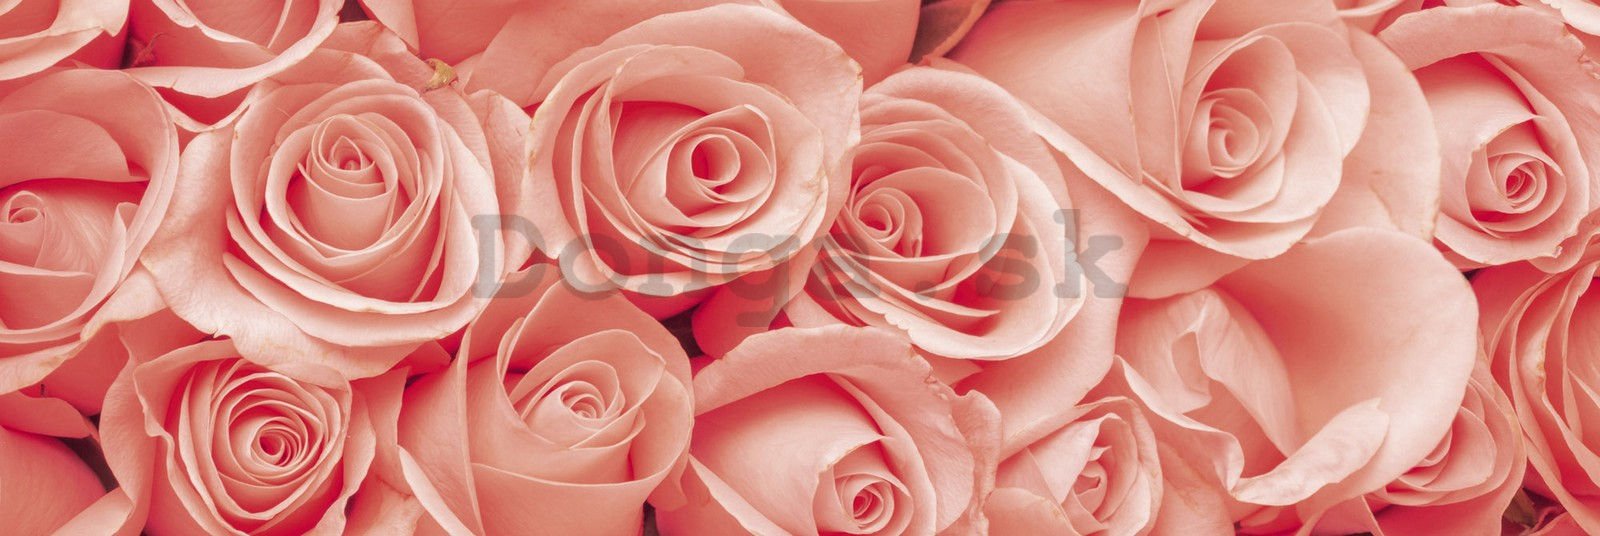 Samolepiaca umývateľná tapeta za kuchynskú linku - Ružové ruže, 180x60 cm